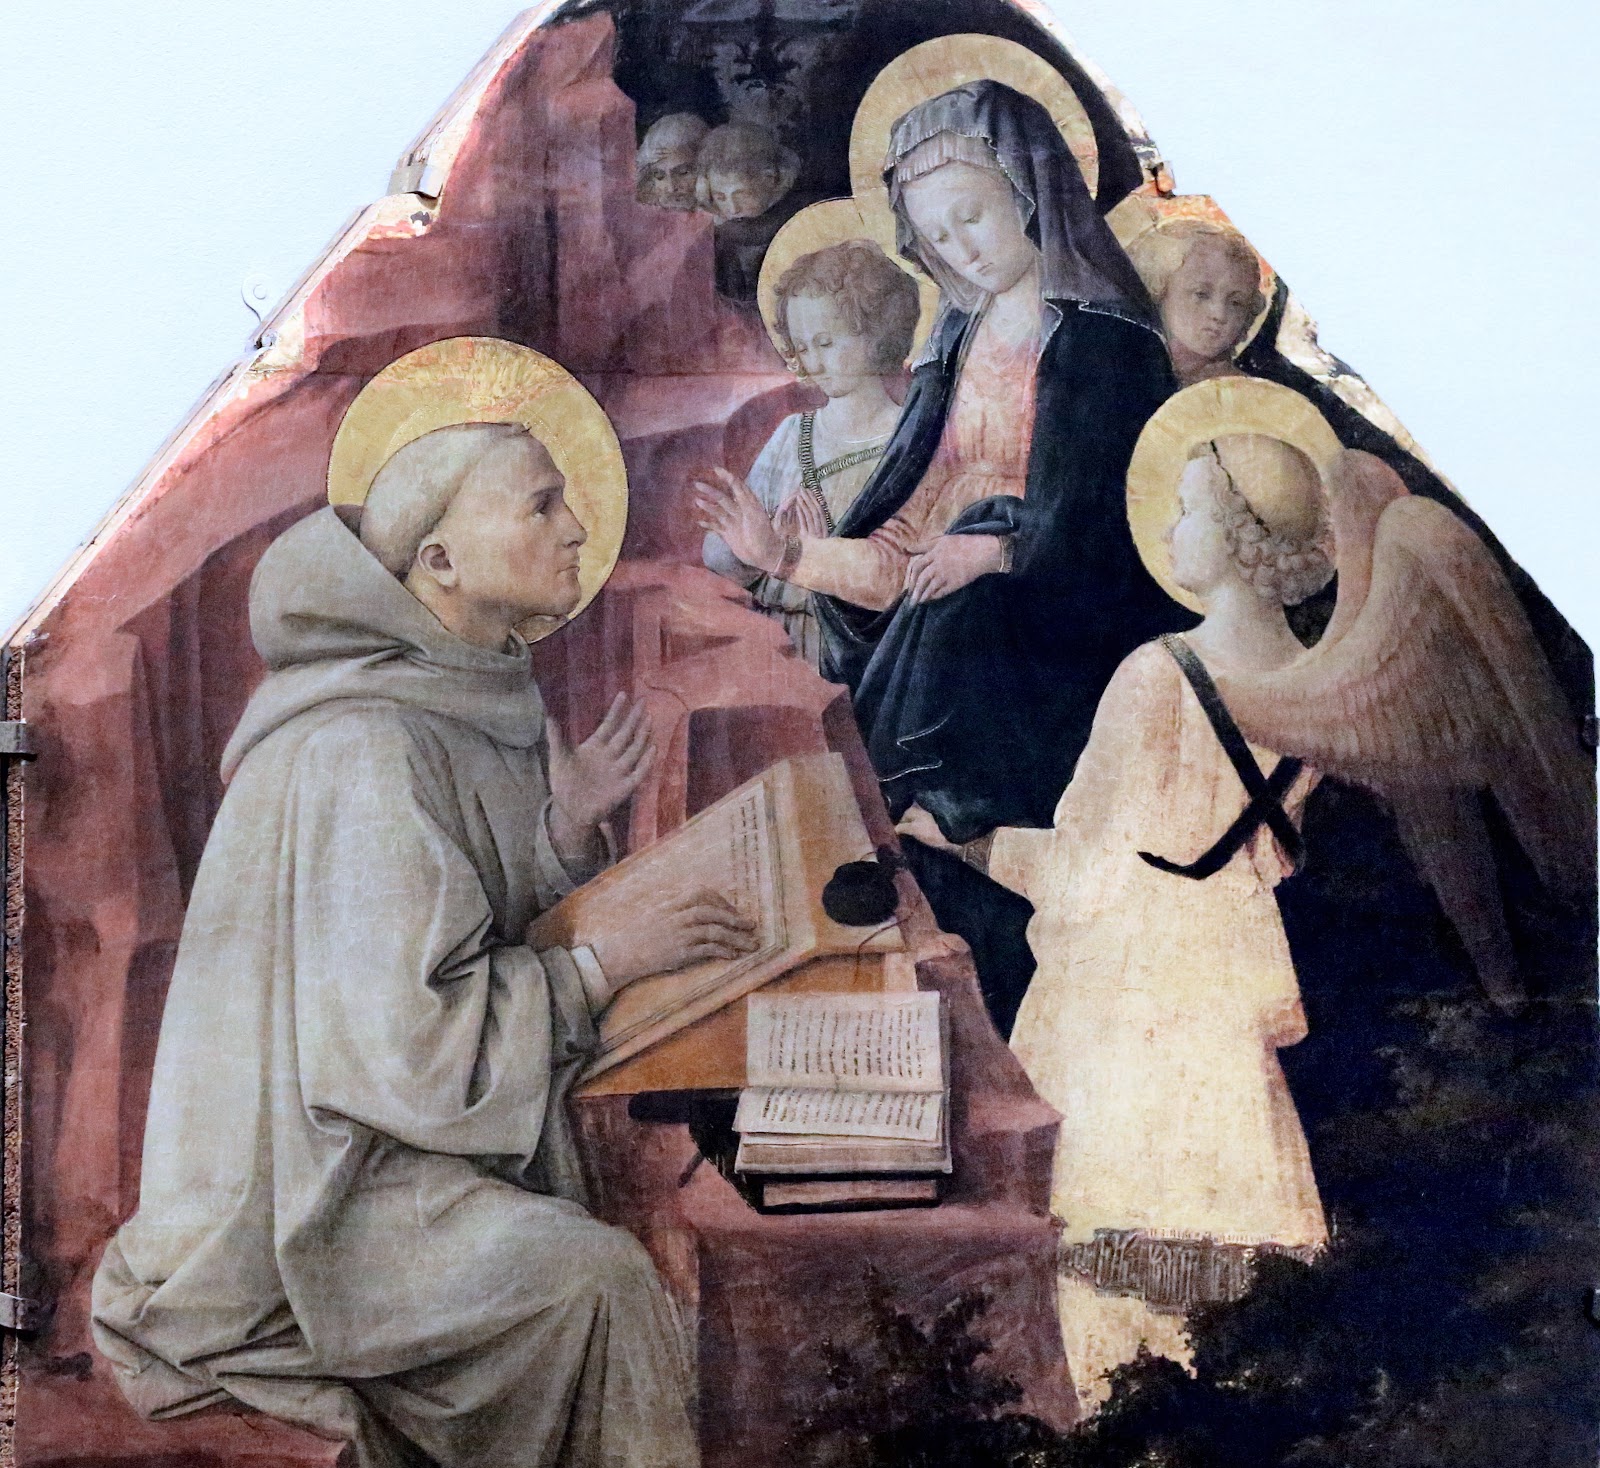 Filippino+Lippi-1457-1504 (140).jpg